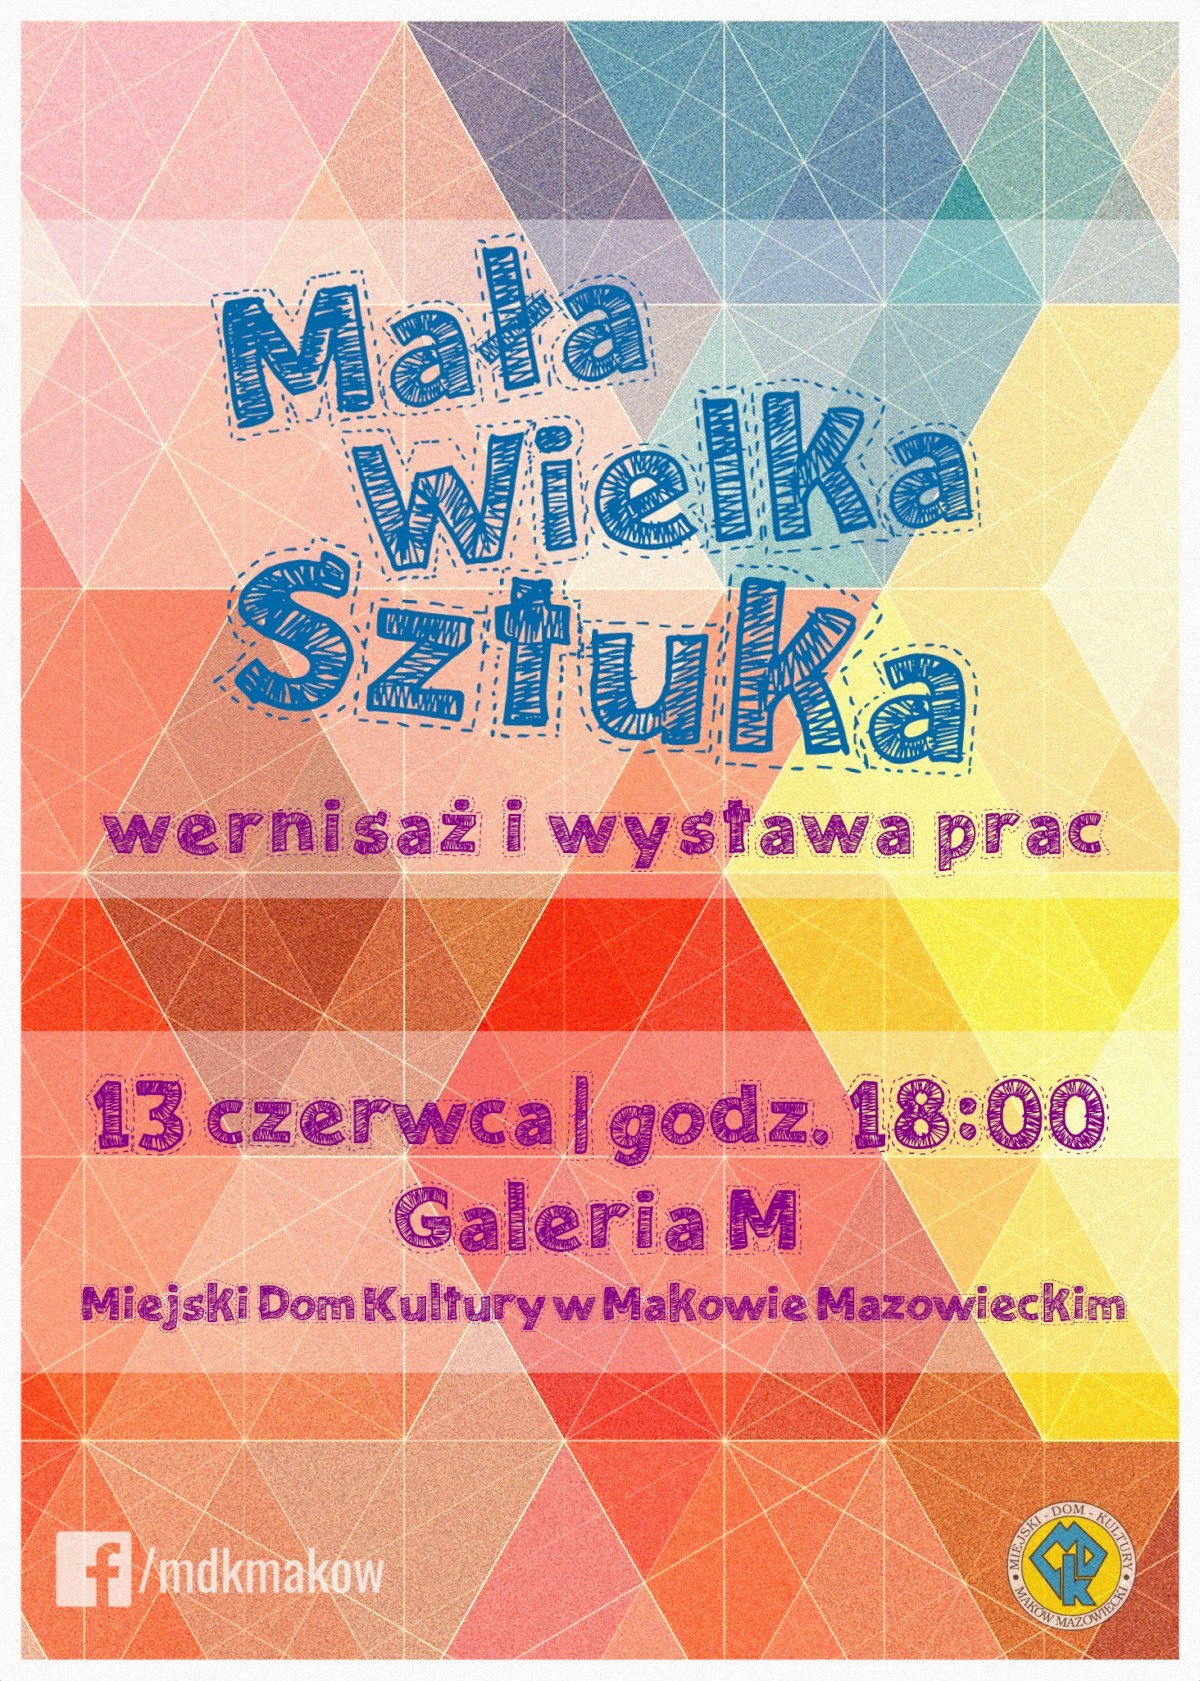 Plakat. MałaWielka Sztuka wernisaż i wystawa prac. 13 czerwca godzina 18:00 Galeria M